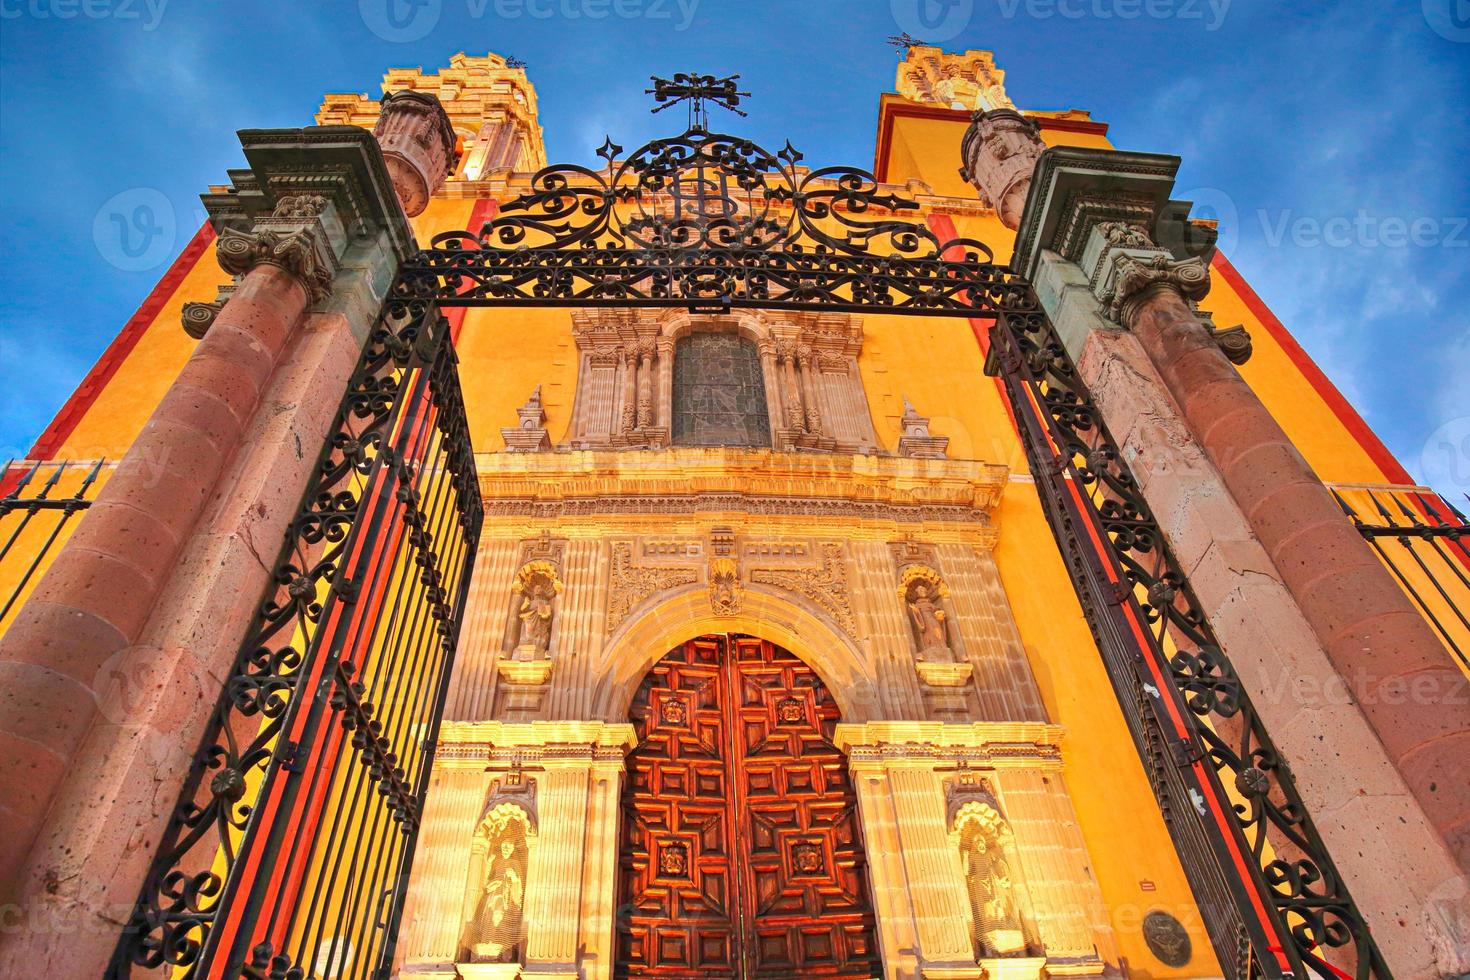 ingången till basilikan av vår fru av guanajuato basilica de nuestra senora de guanajuato foto